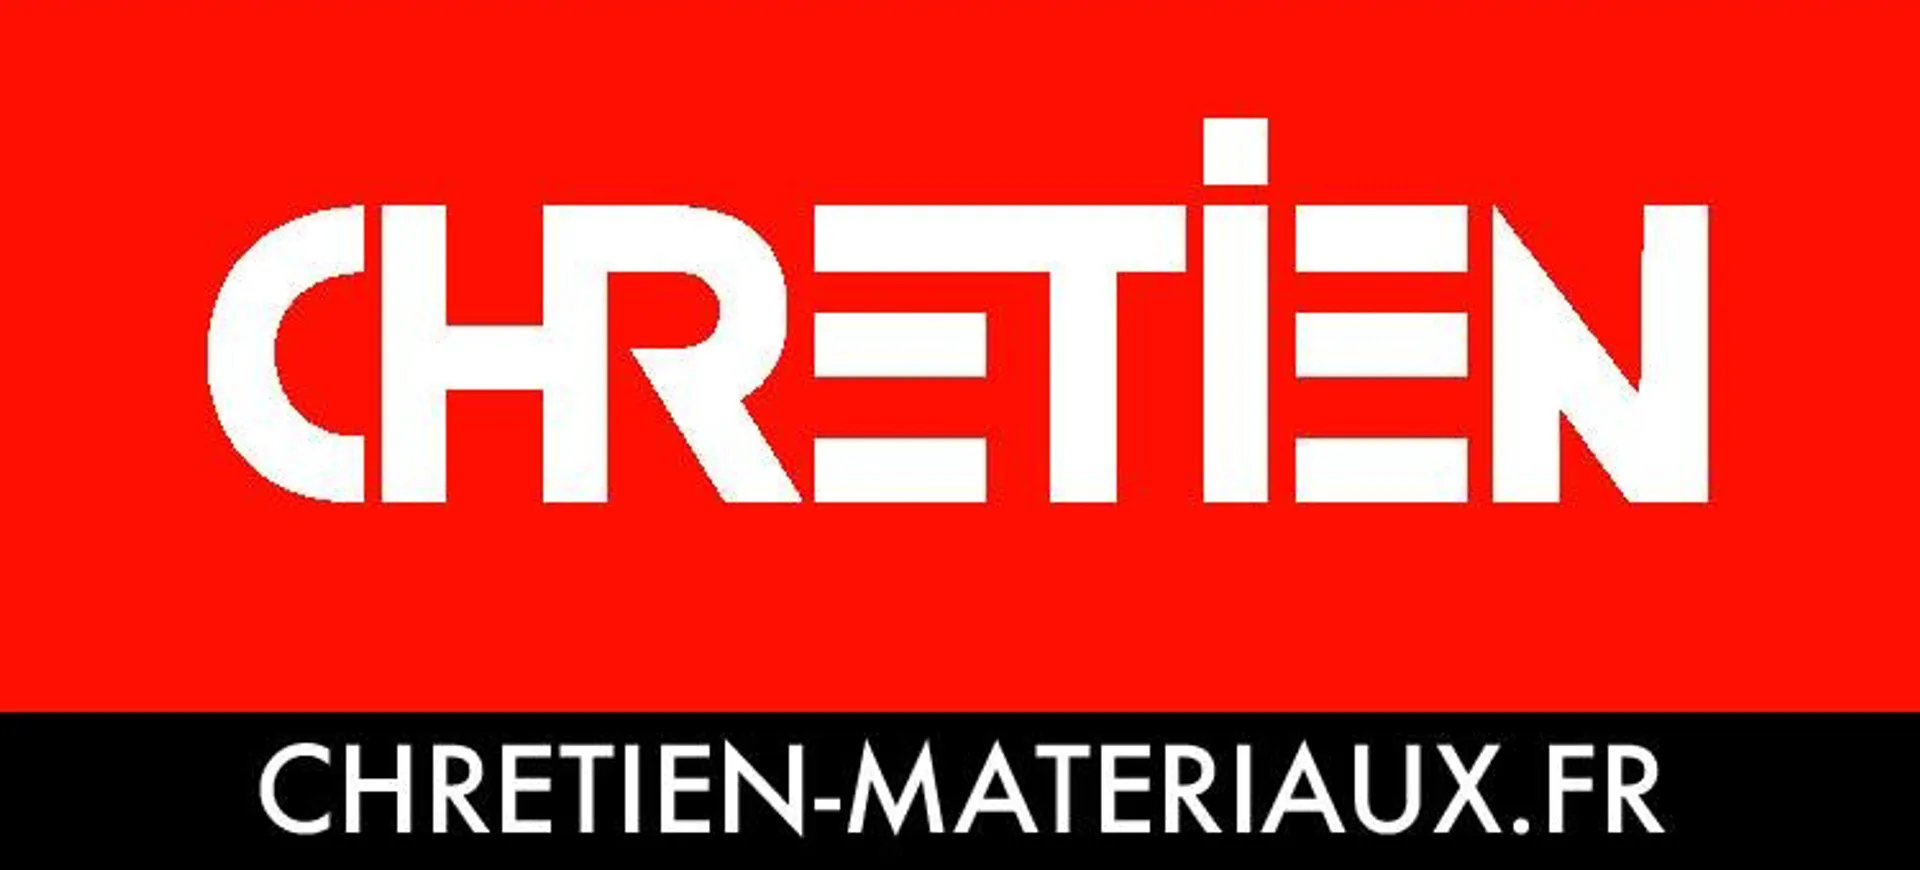 CHRETIEN MATÉRIAUX logo du catalogue